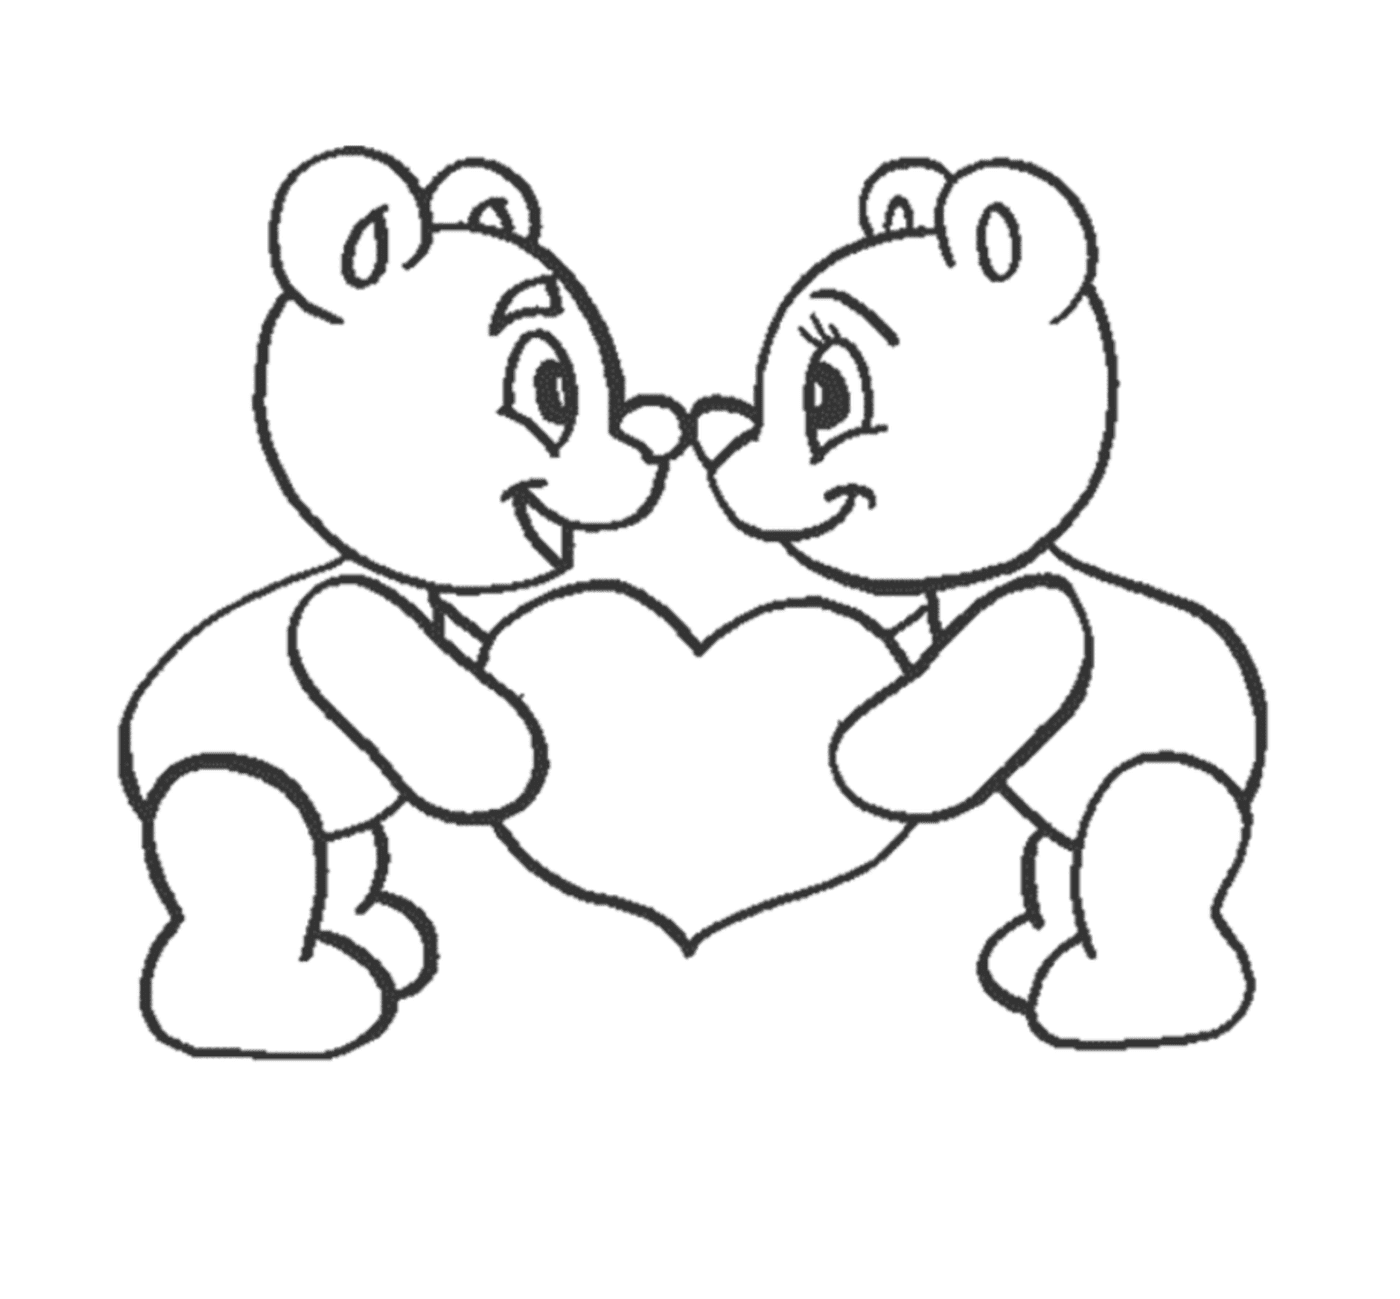  Два плюшевых медведя держат сердце в руках 